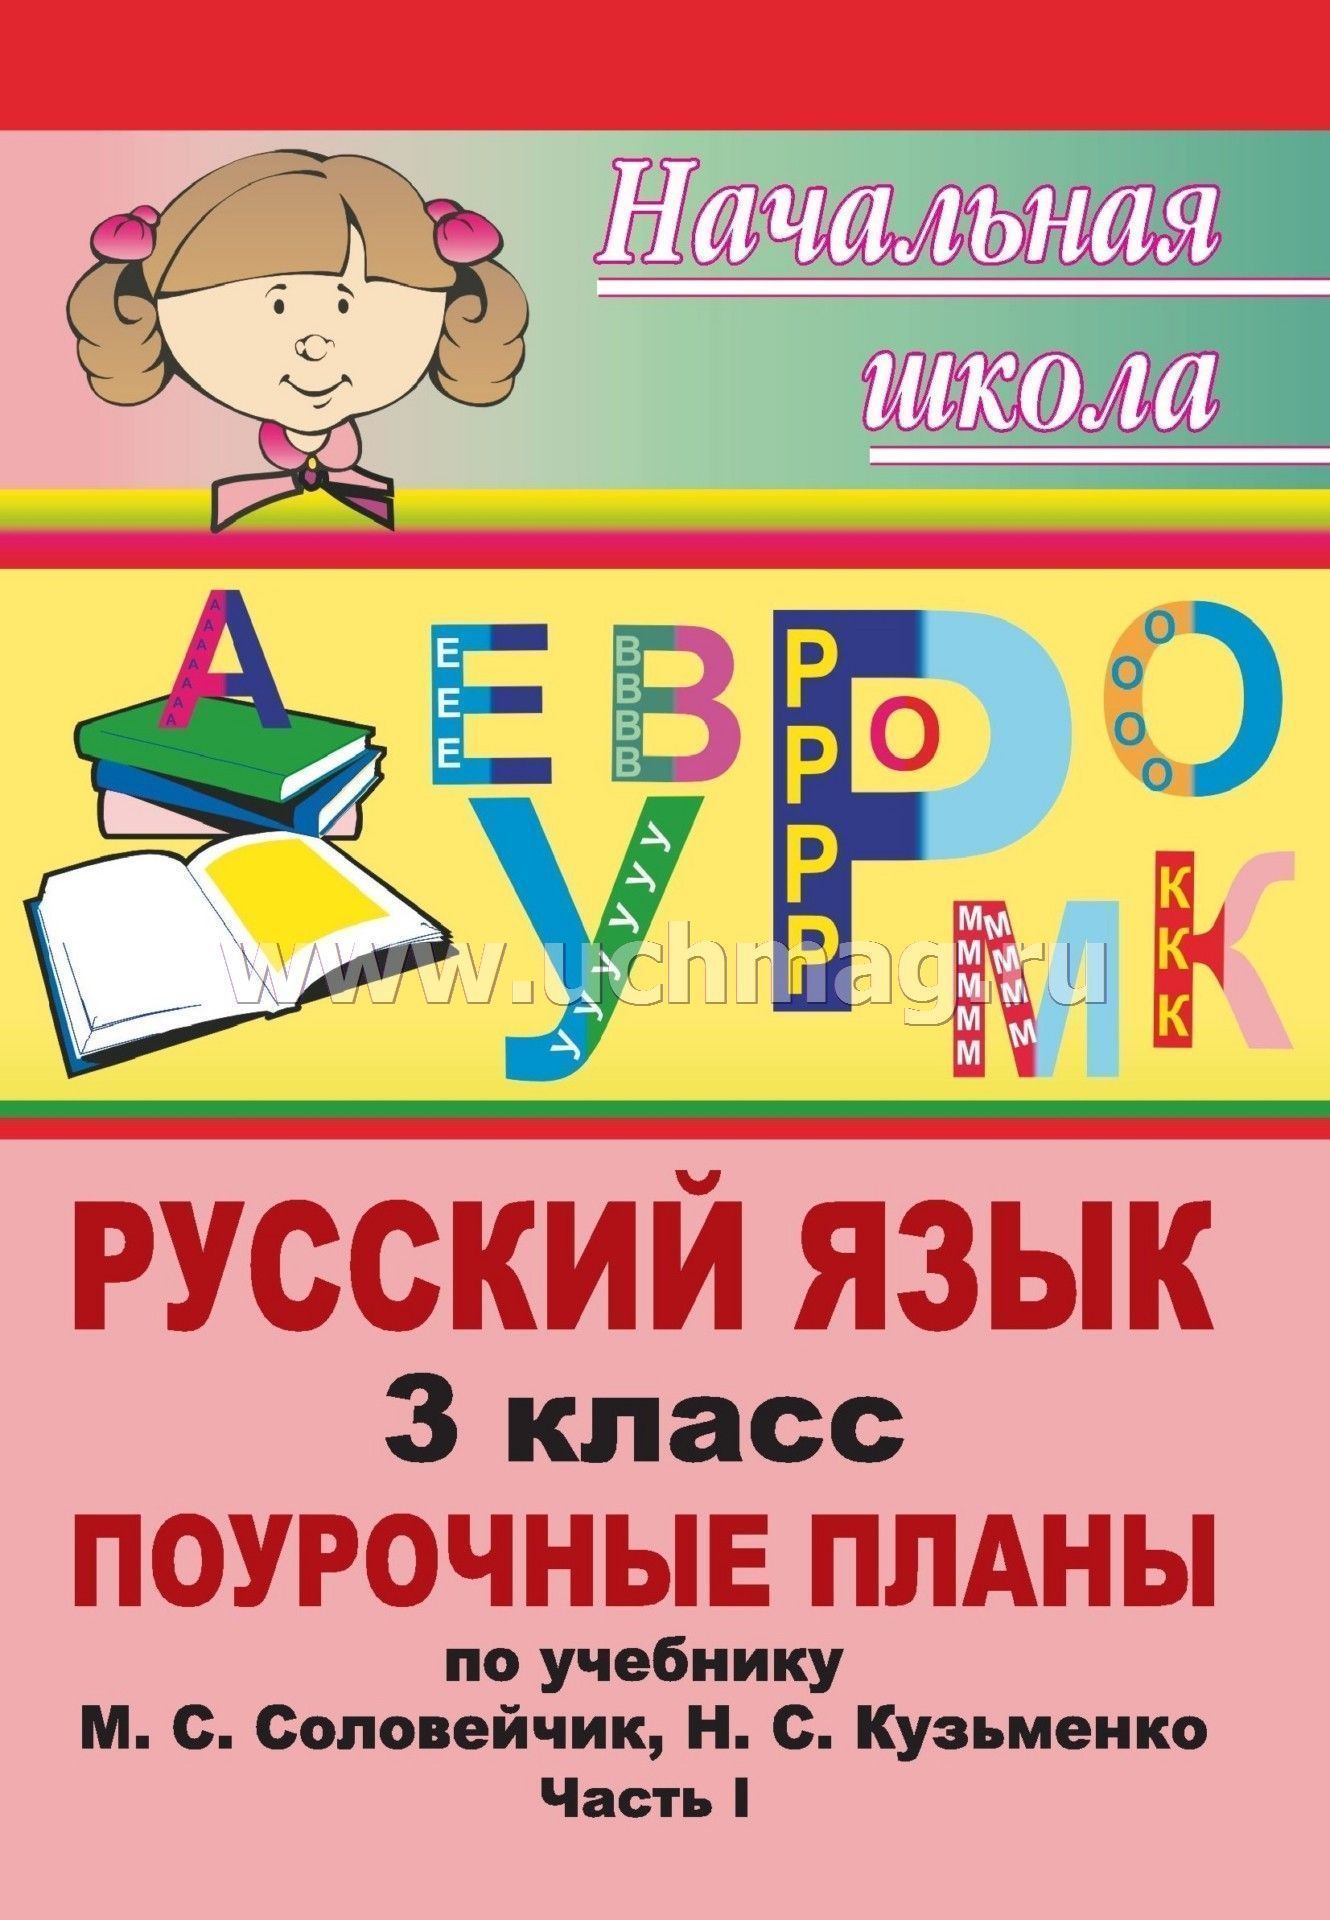 Урок русского языка в 3 классе назовем слова указатели